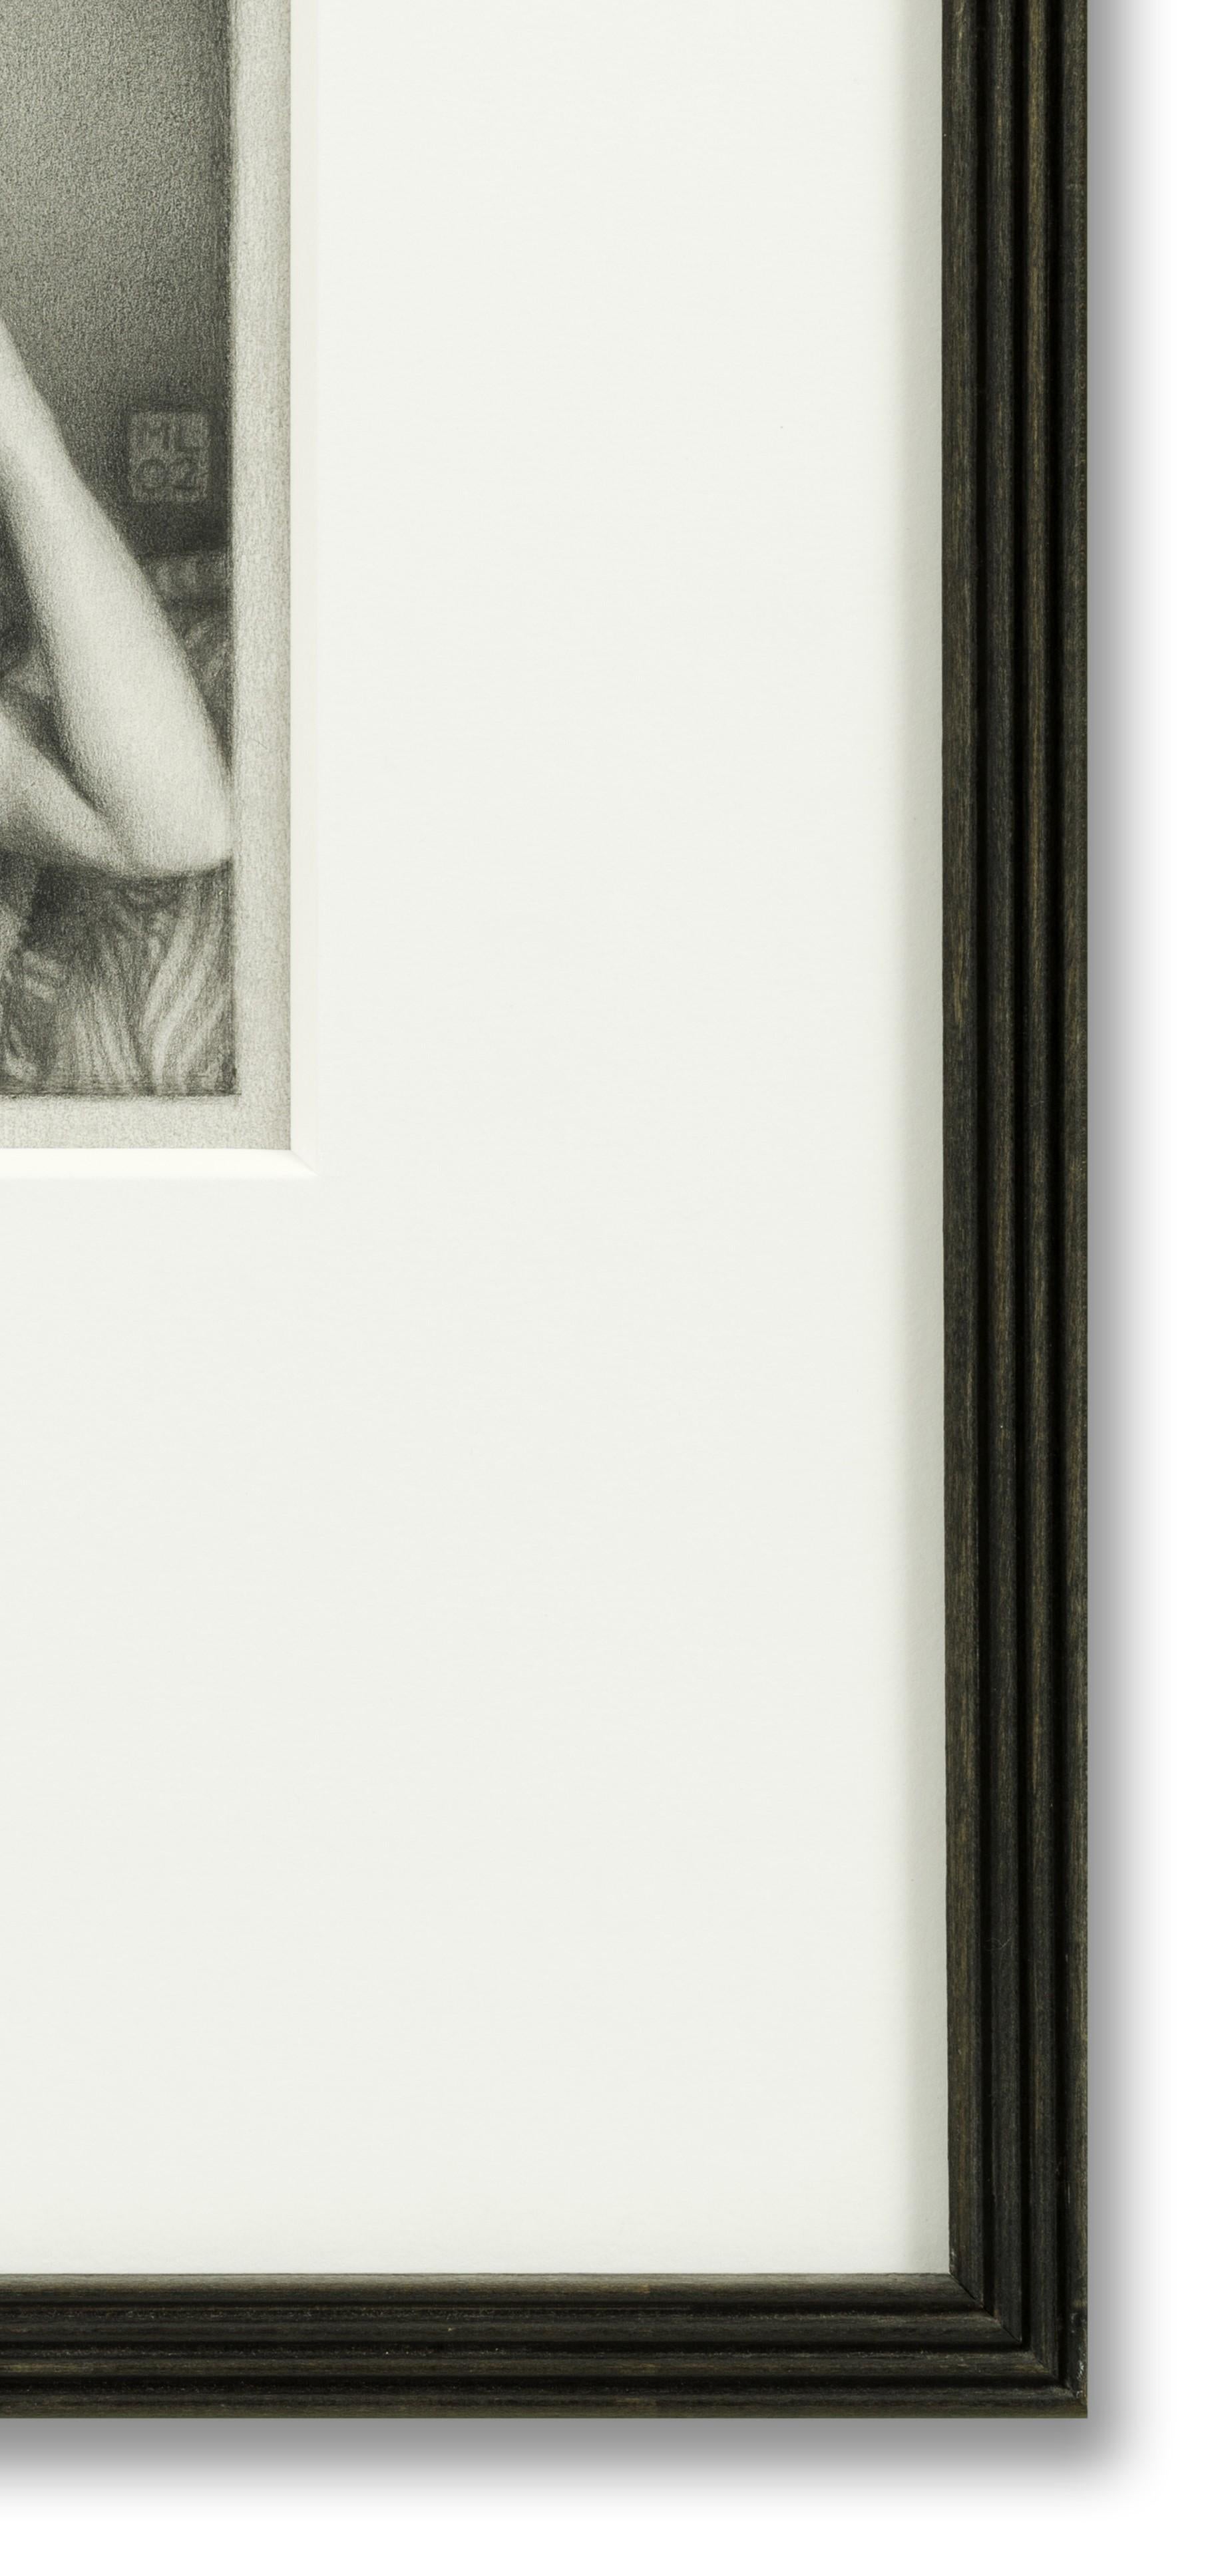 Crayon graphite sur papier, 18,5cm x 19cm, (encadré 50cm x 42cm). (Provenance : de l'artiste).

Leonard est probablement plus connu pour son portrait de Sa Majesté la Reine Elizabeth, qui se trouve à la National Portrait Gallery de Londres. Le nu,